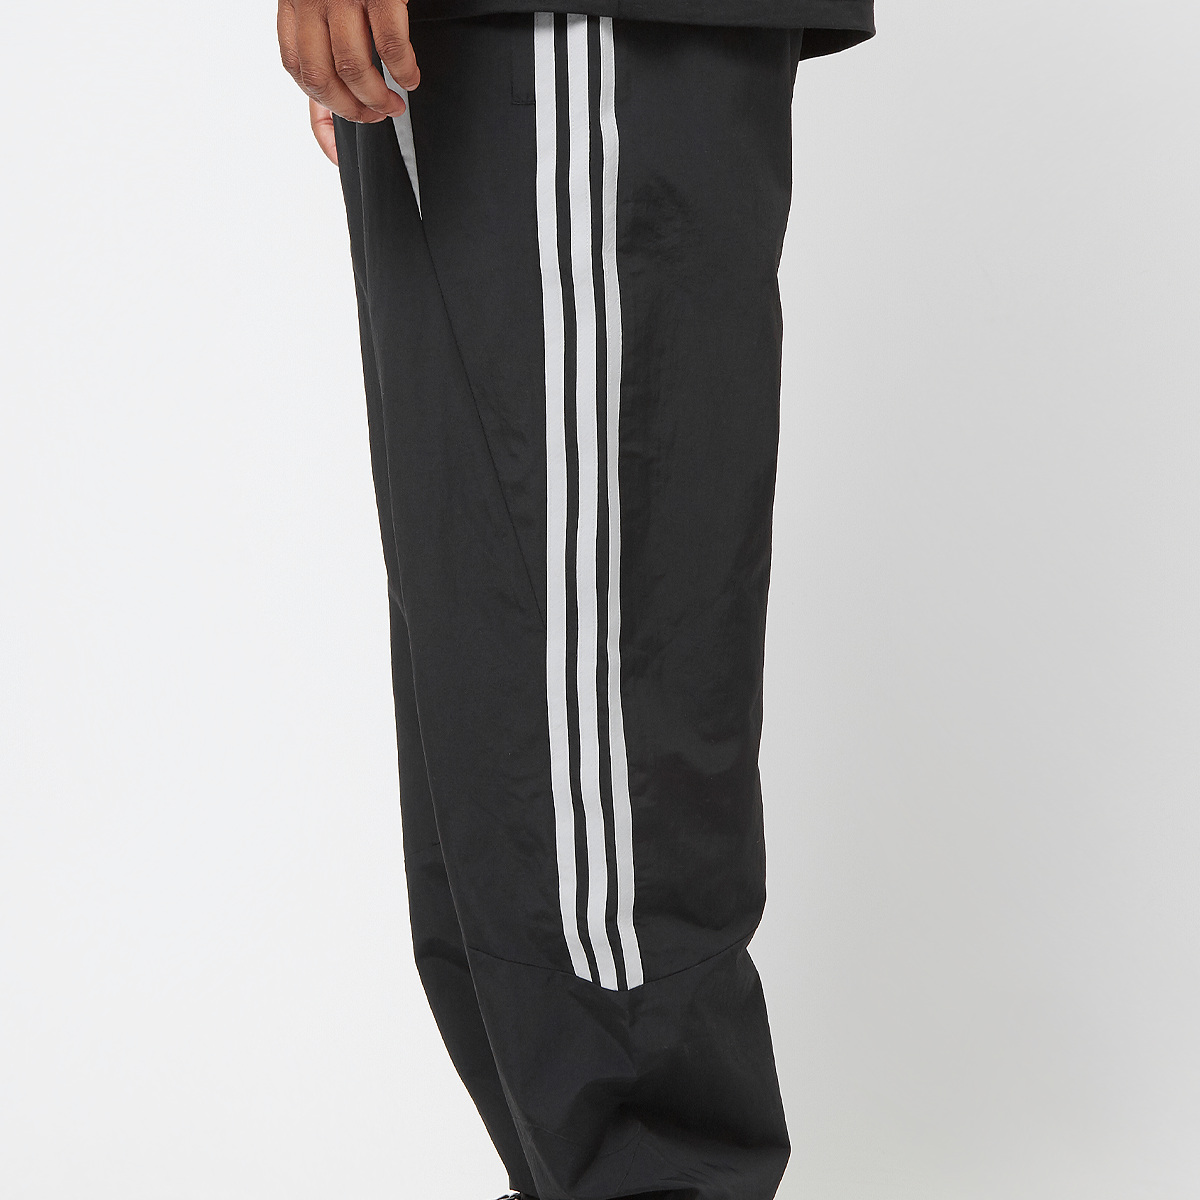 adidas Originals Climacool Jogging Broek Trainingsbroeken Heren black maat: S beschikbare maaten:S M L XL